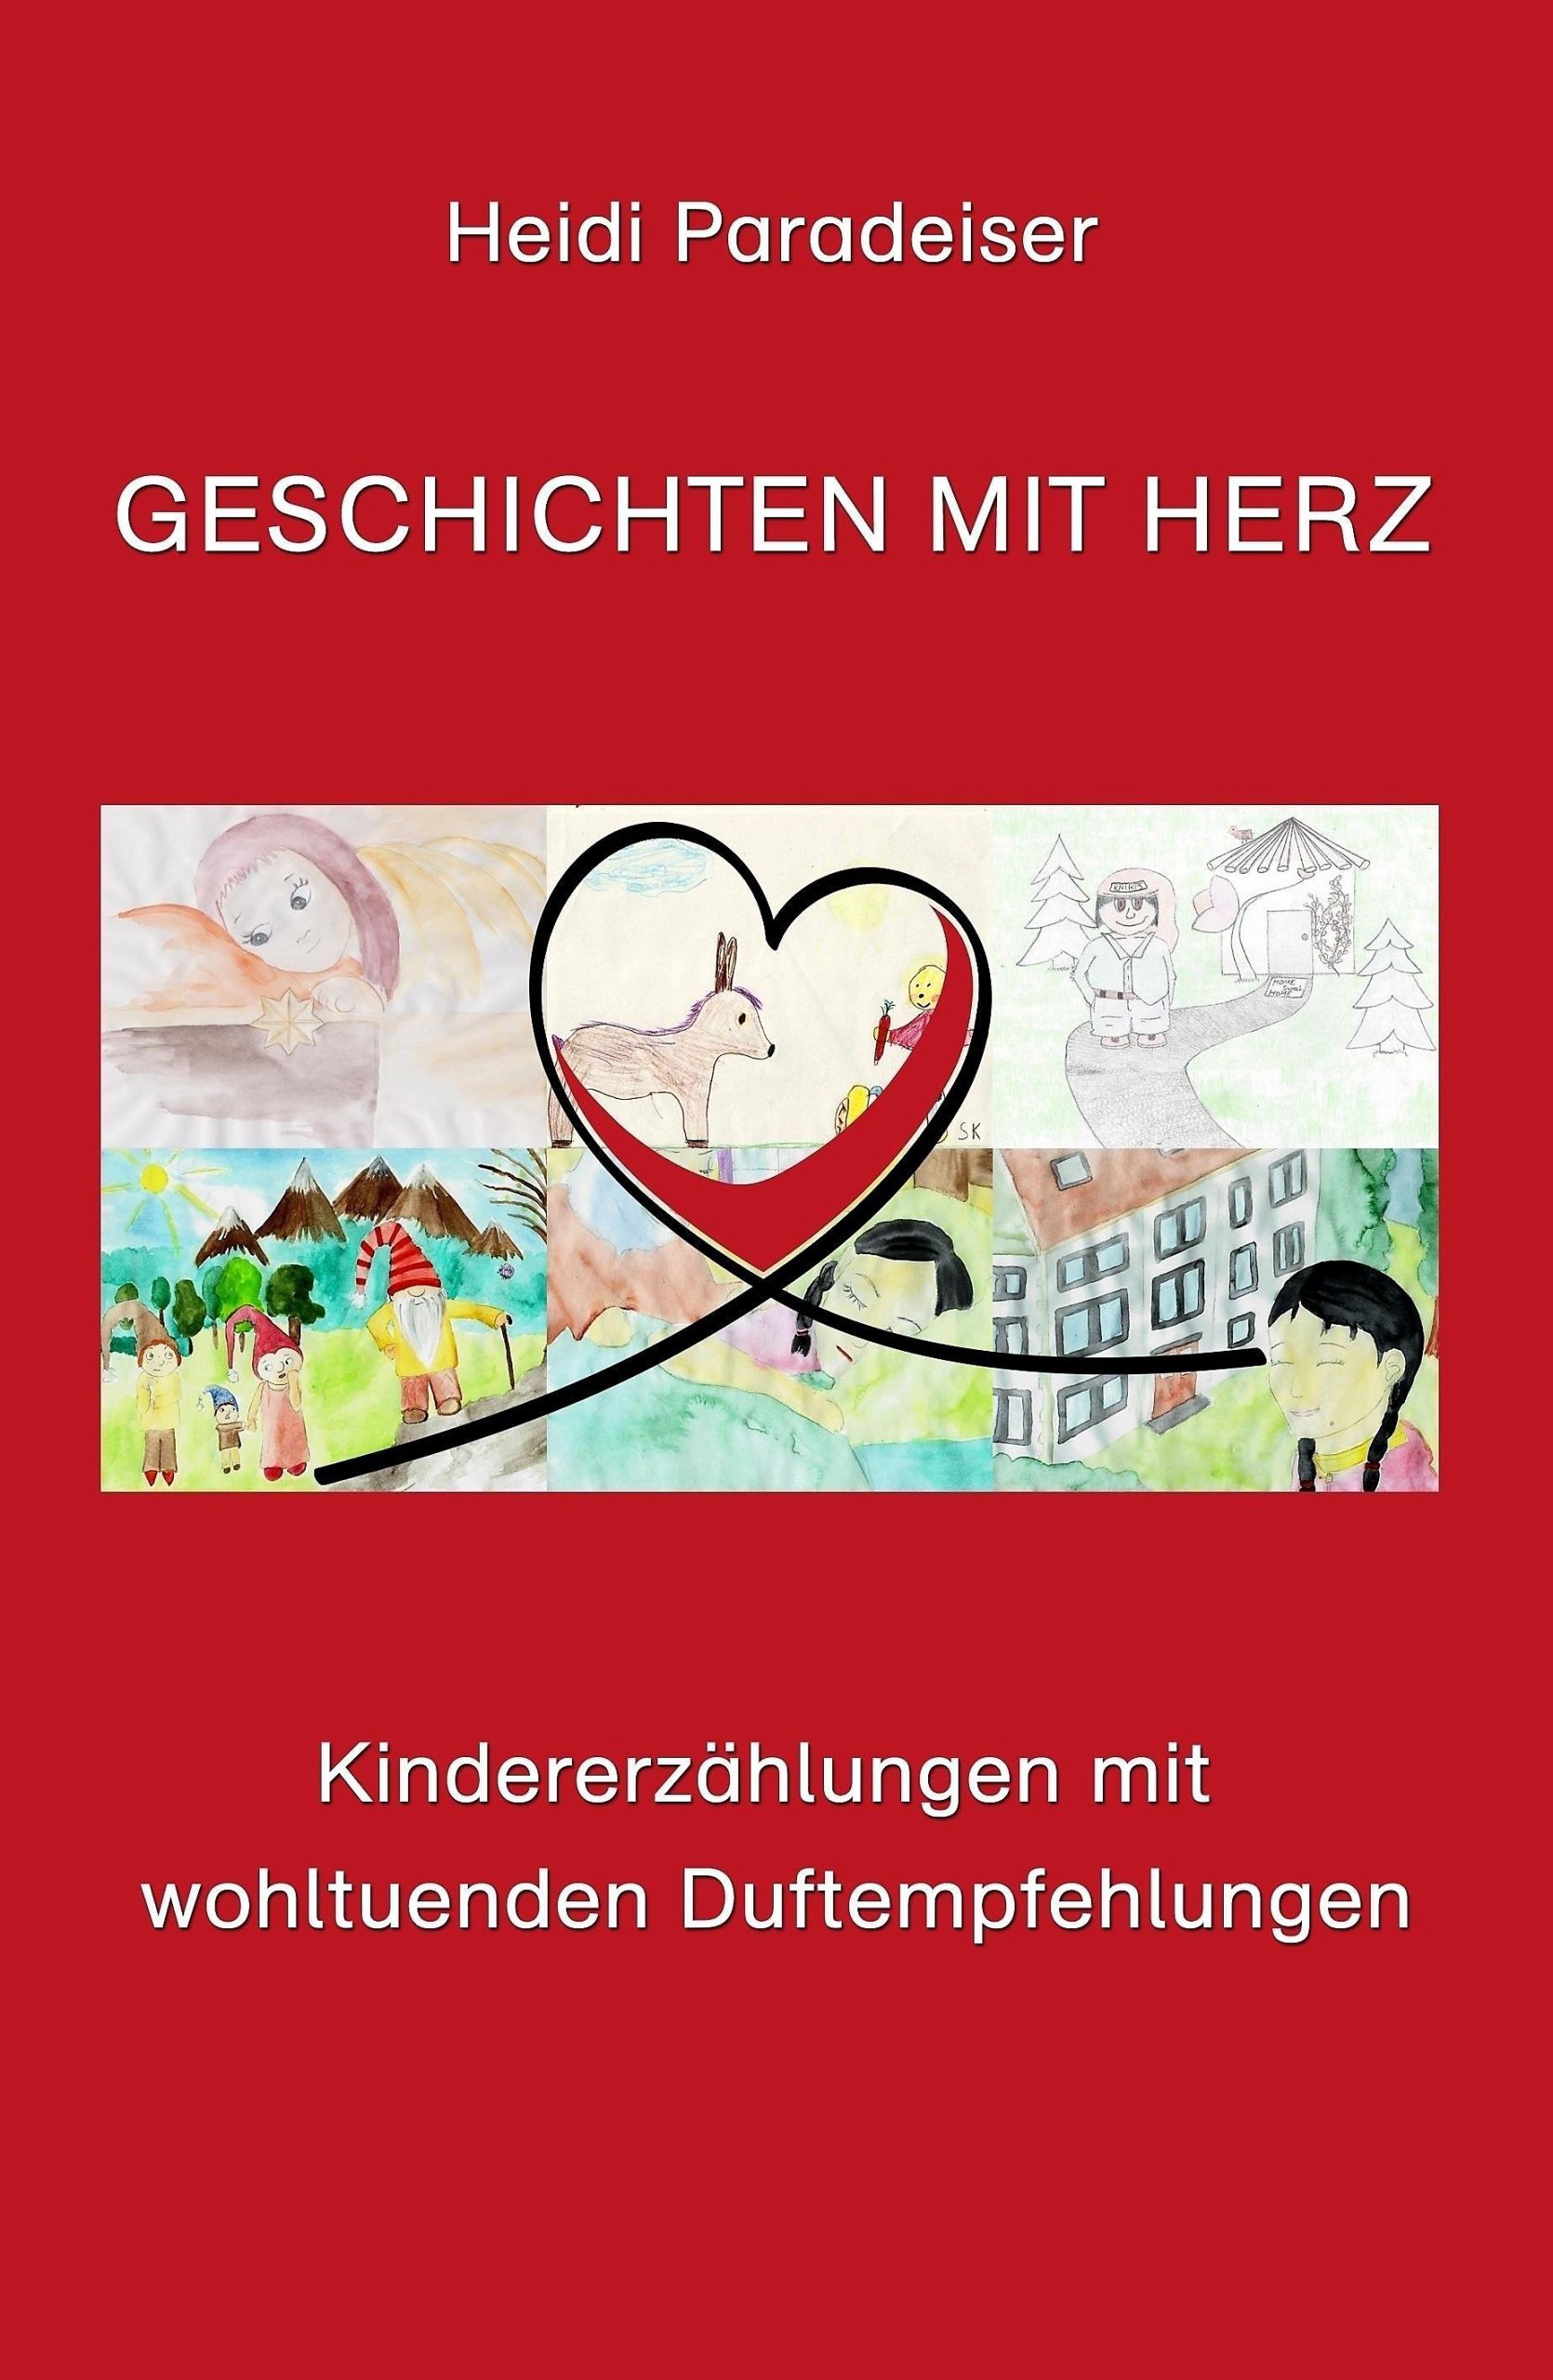 Gartendeko Herz Elegant Geschichten Mit Herz Ebook Jetzt Bei Weltbild Als Download